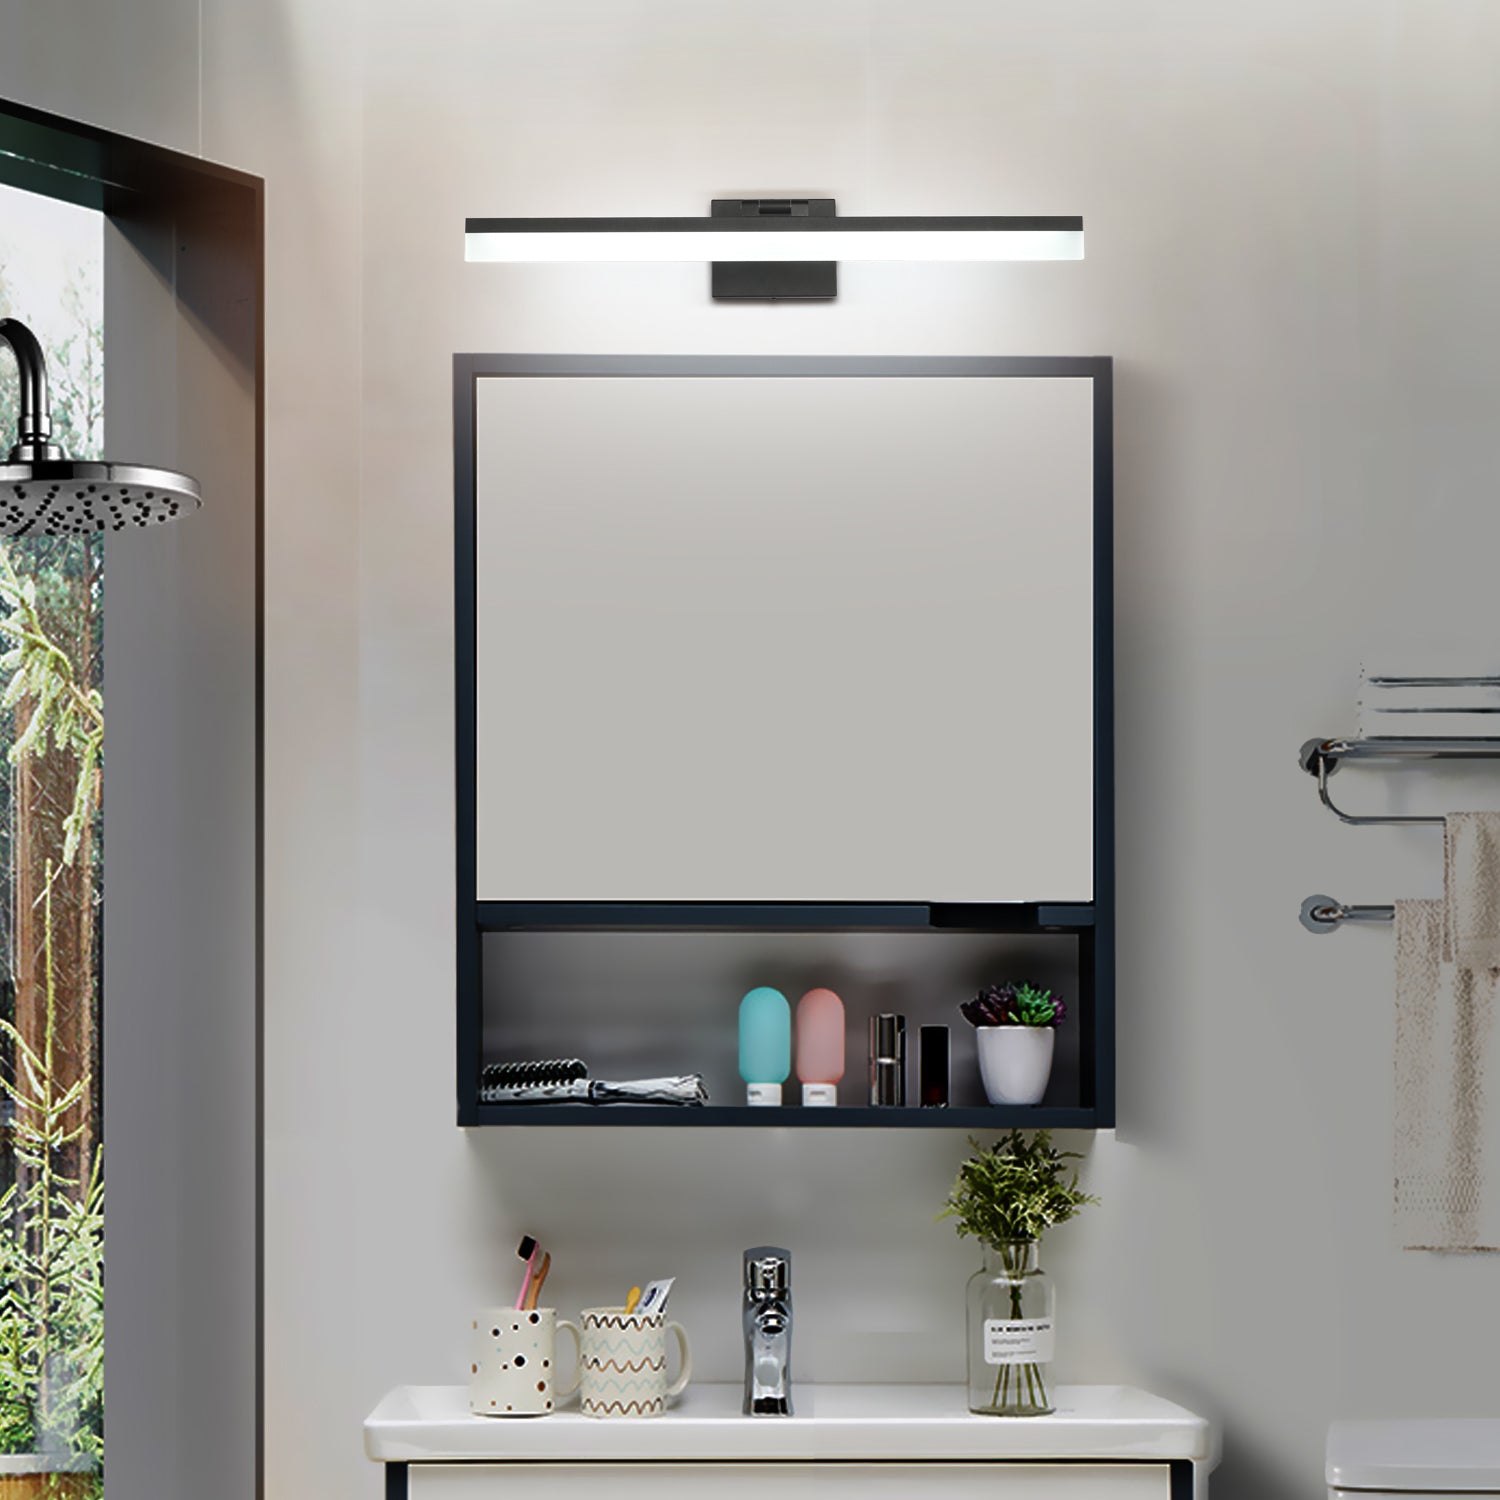 SOLFART Dimmable Vanity Light Bathroom Light Fixture Over Mirror